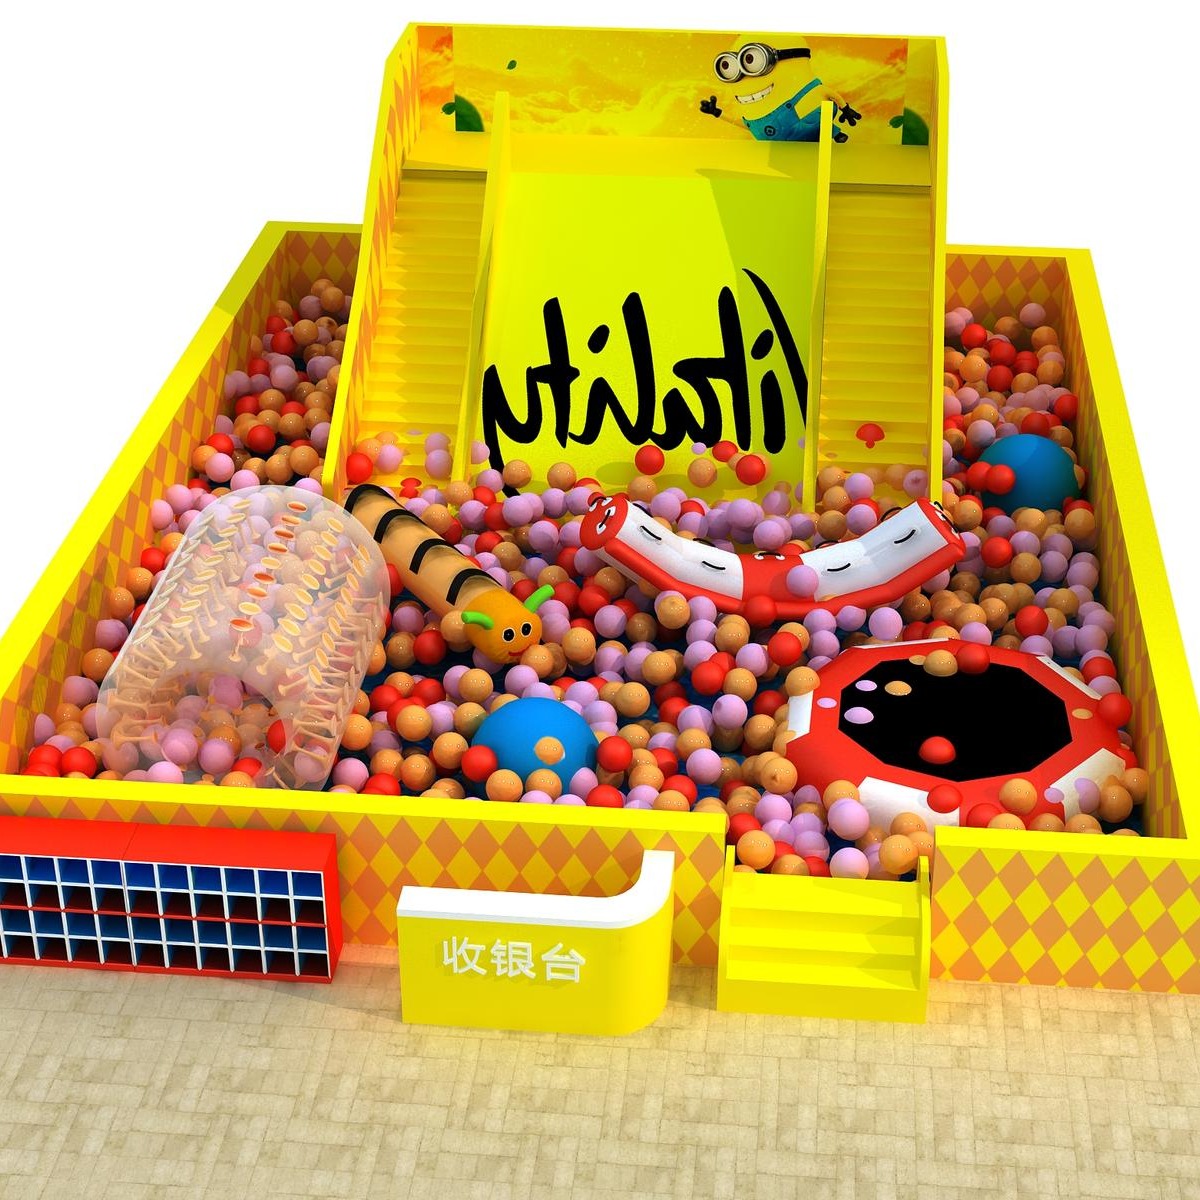 淘气堡设备 儿童游乐设备 铭博  淘气堡  造型球池  百万滑梯球池图片